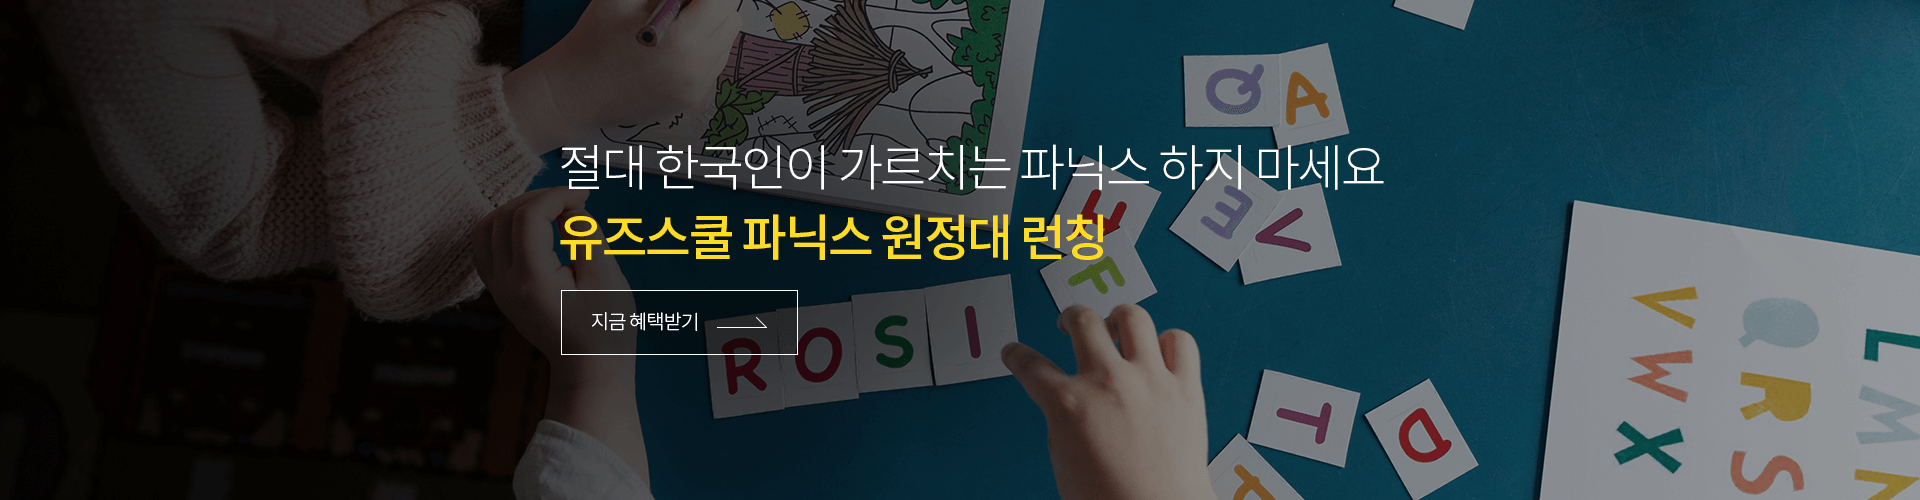 절대 한국인이 가르치는 파닉스 하지 마세요. 유즈스쿨 파닉스원정대 지금 혜택받기